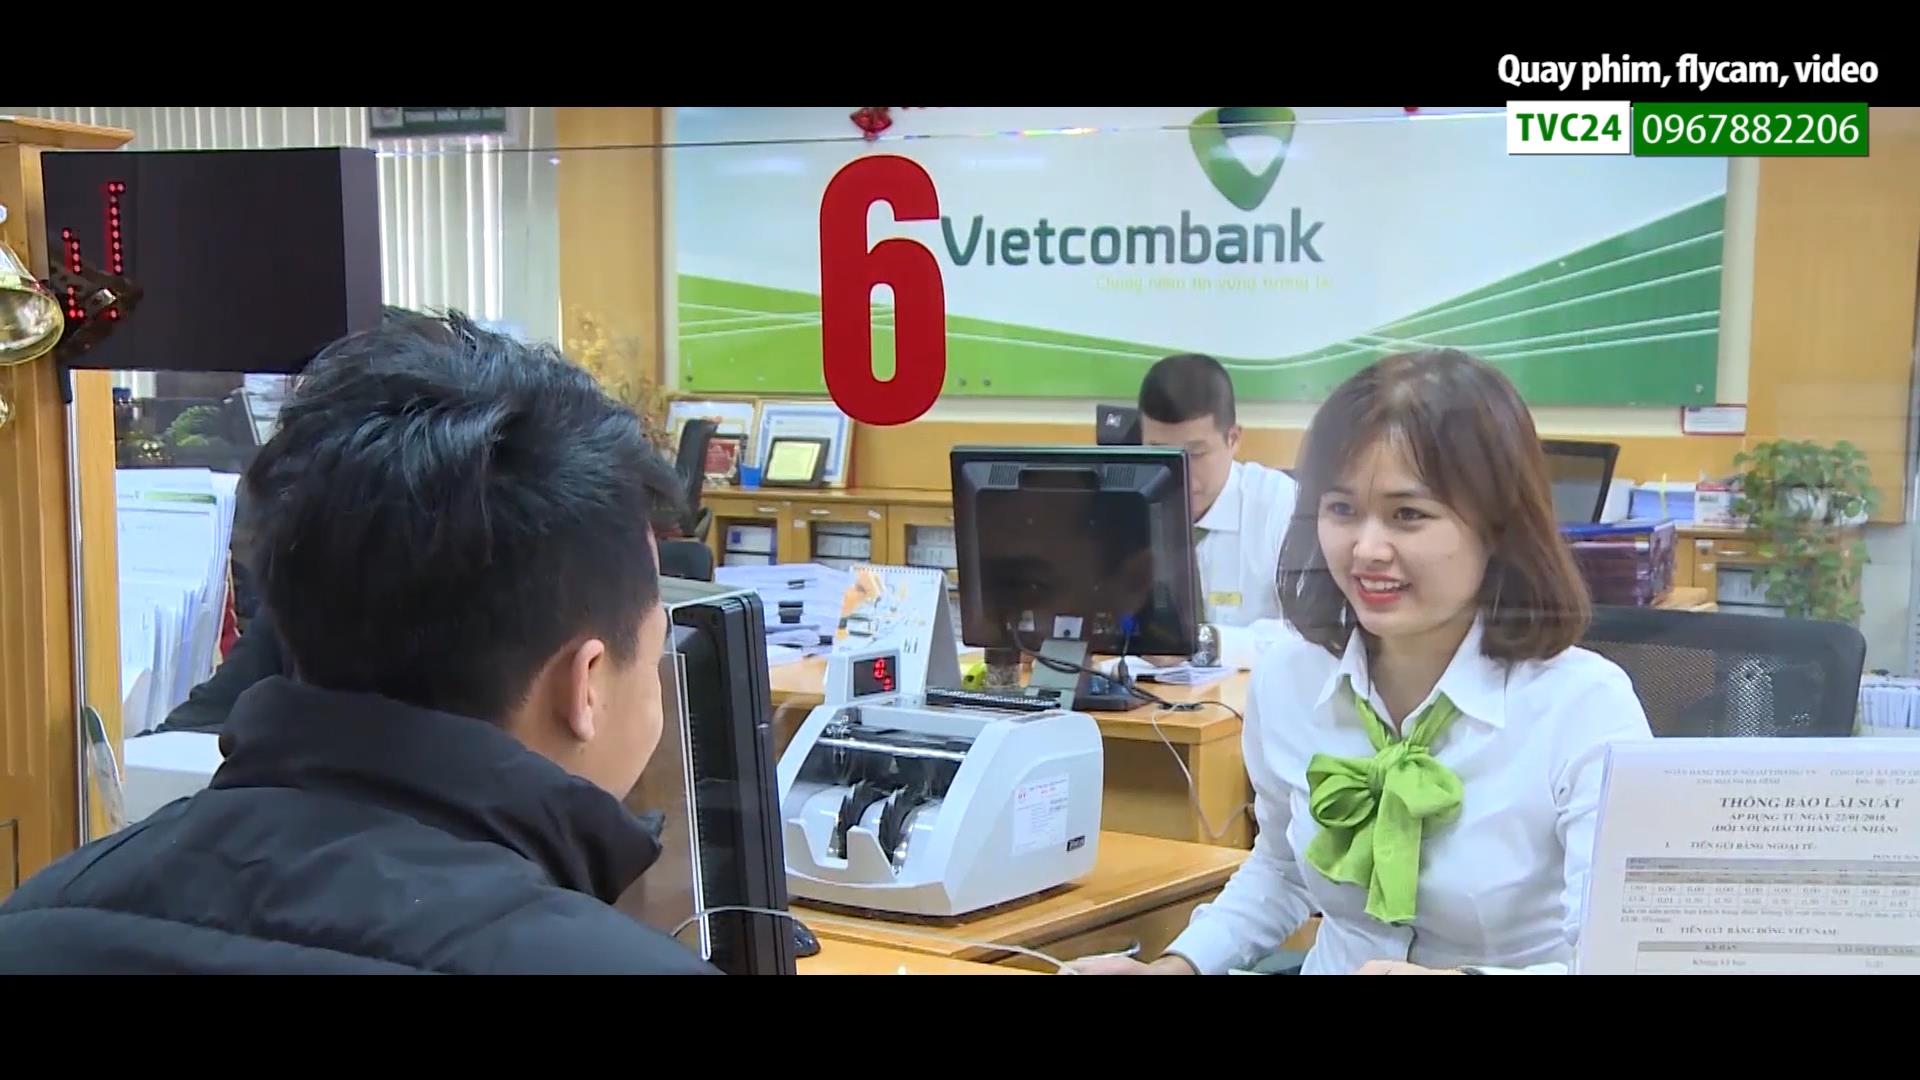  Phim doanh nghiệp VIETCOMBANK chi nhánh Ba Đình Hà Nội